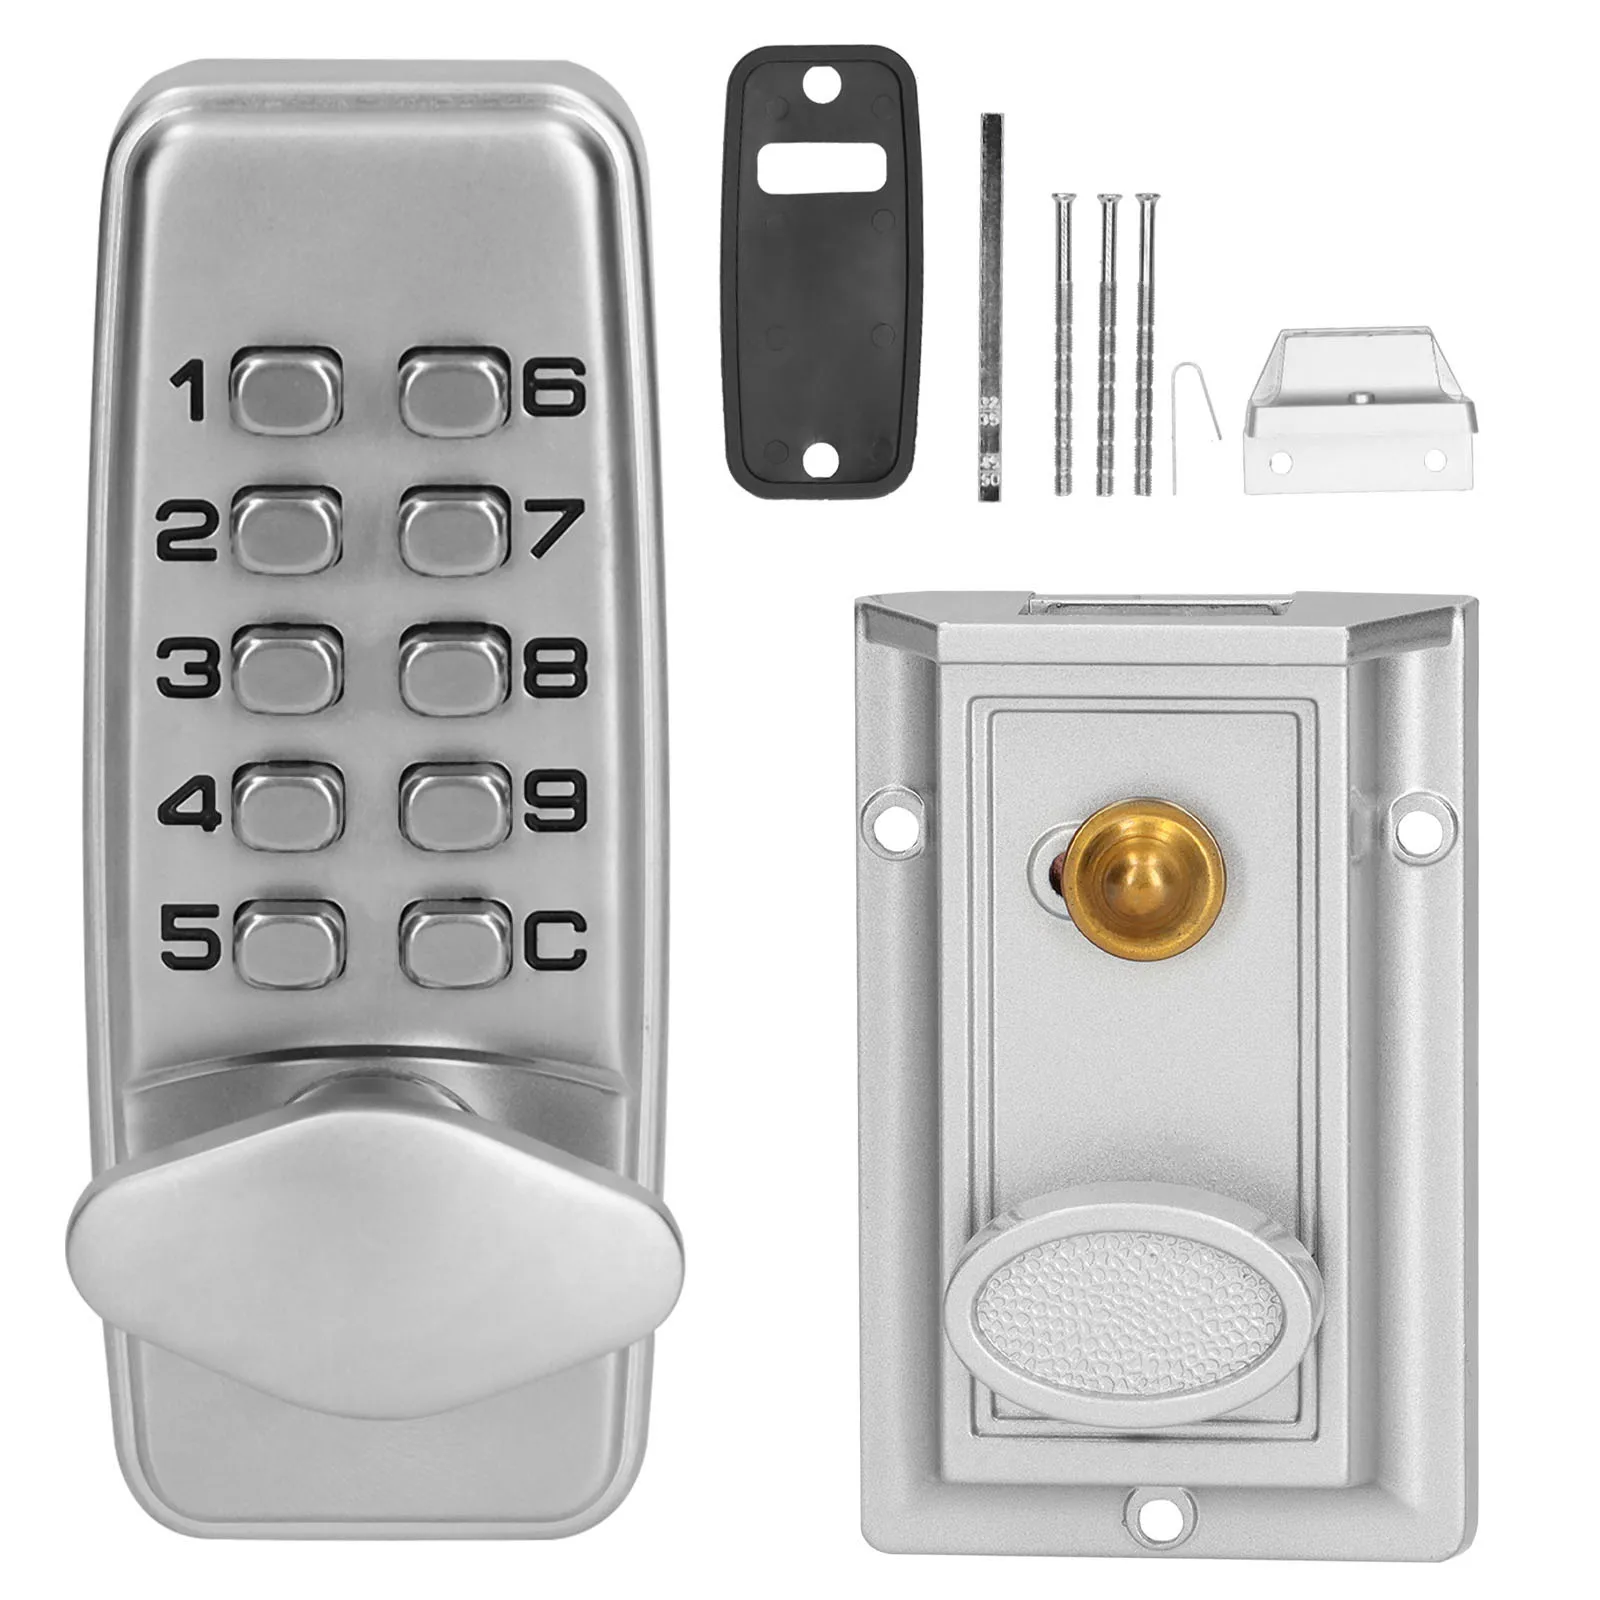 

Mini Zinc Alloy Mechanical Combination Lock Numberal 2 - 4 Digits Code Lock Cabinet Indoor Outdoor Door Security Coded Lock